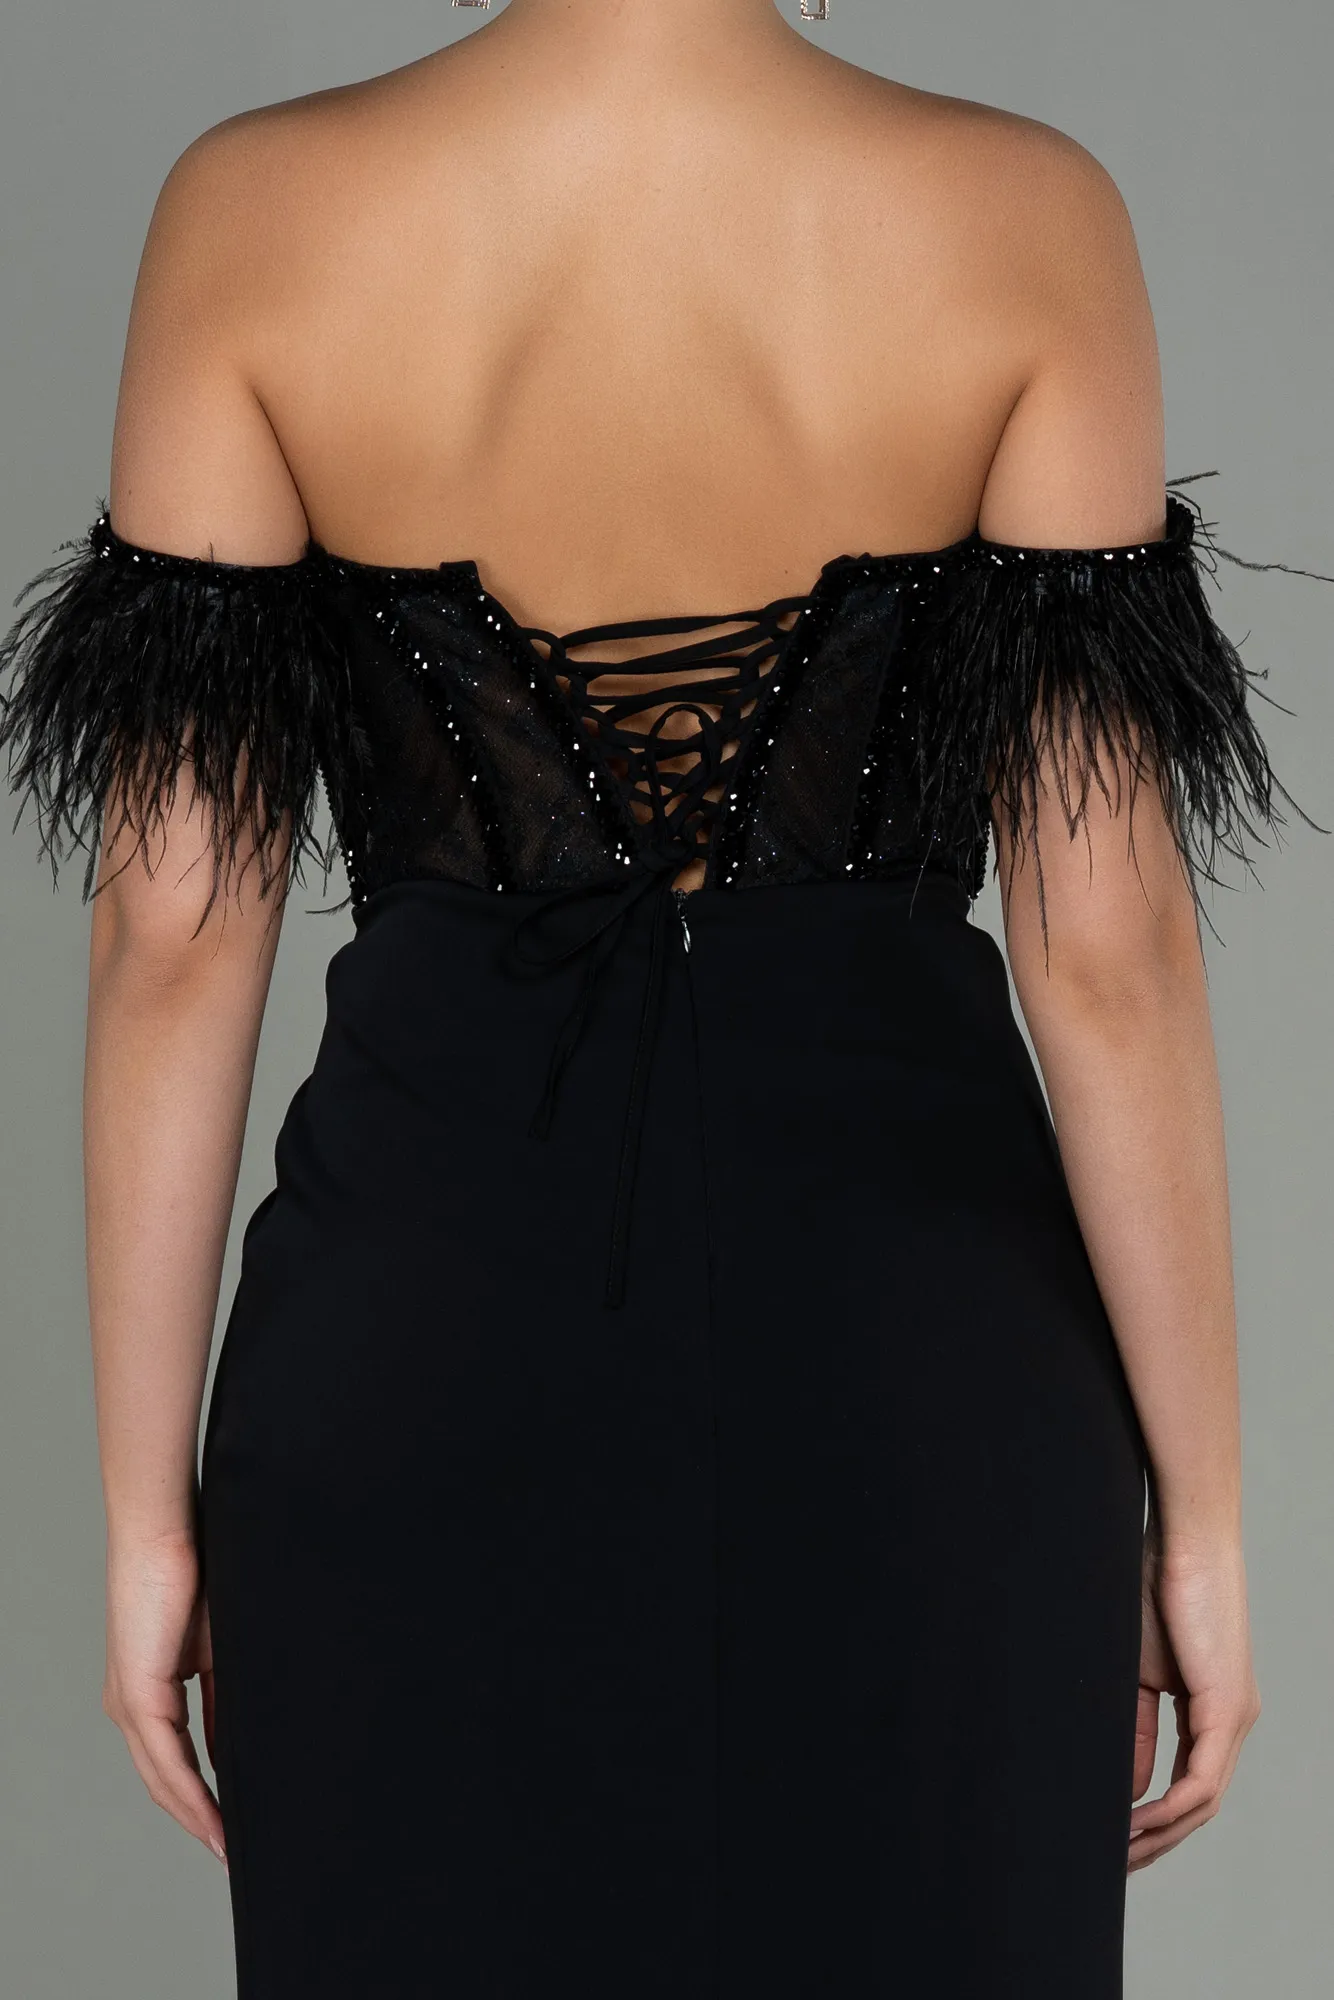 Black-Long Evening Dress ABU3050